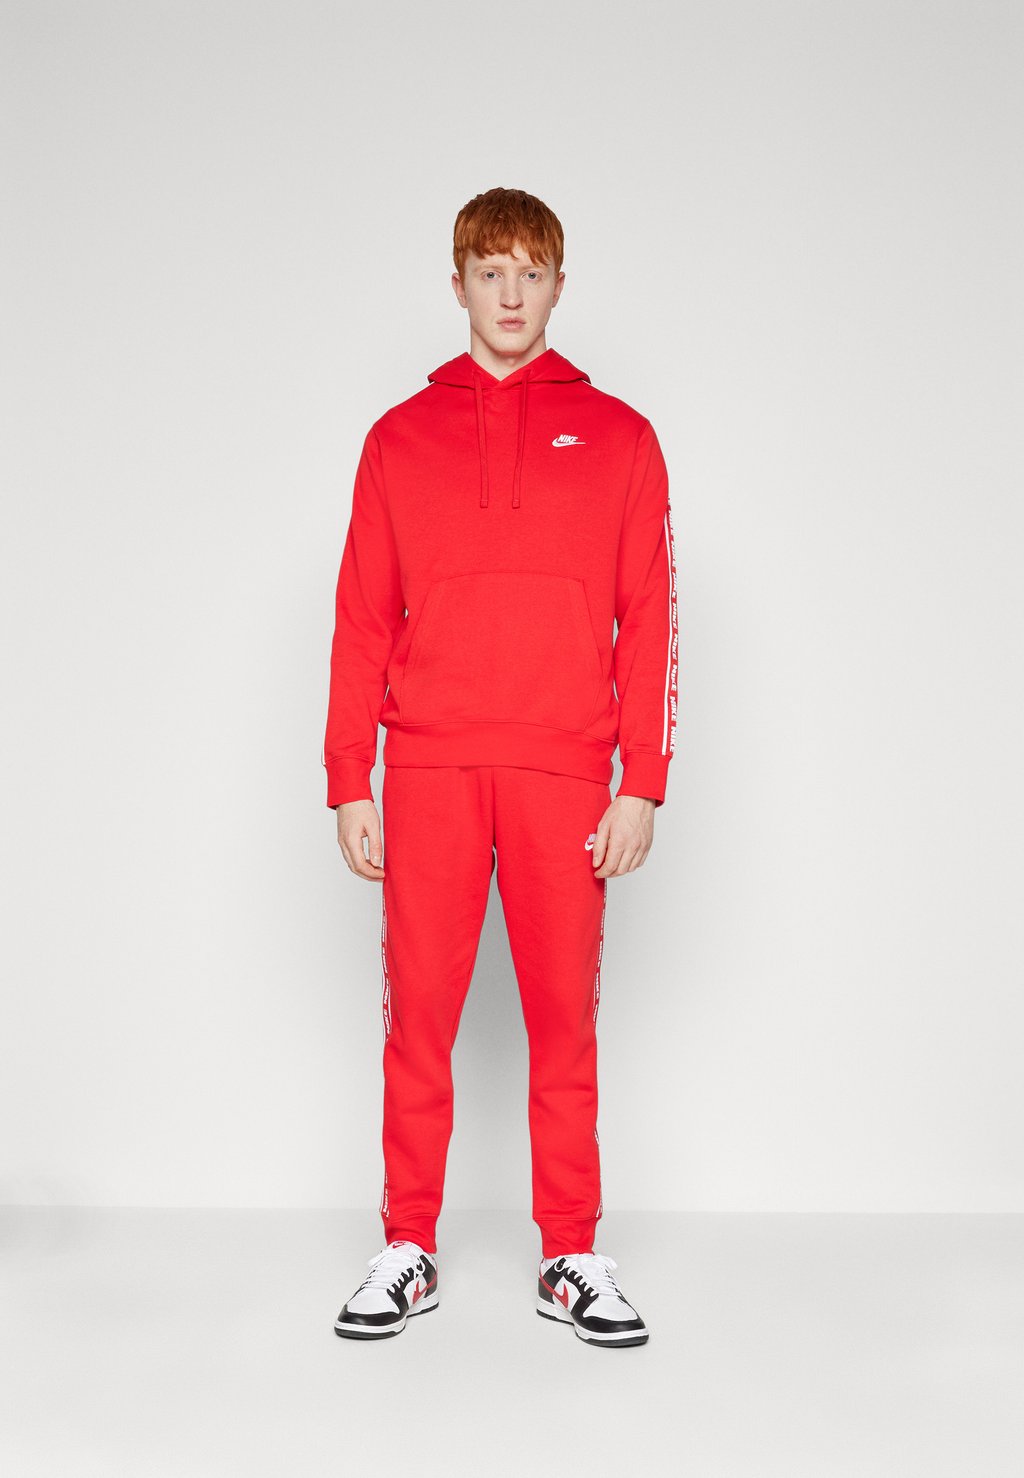 Спортивный костюм CLUB SUIT Nike Sportswear, цвет university red/white шорты nike woven hbr shorts цвет university red gym red white